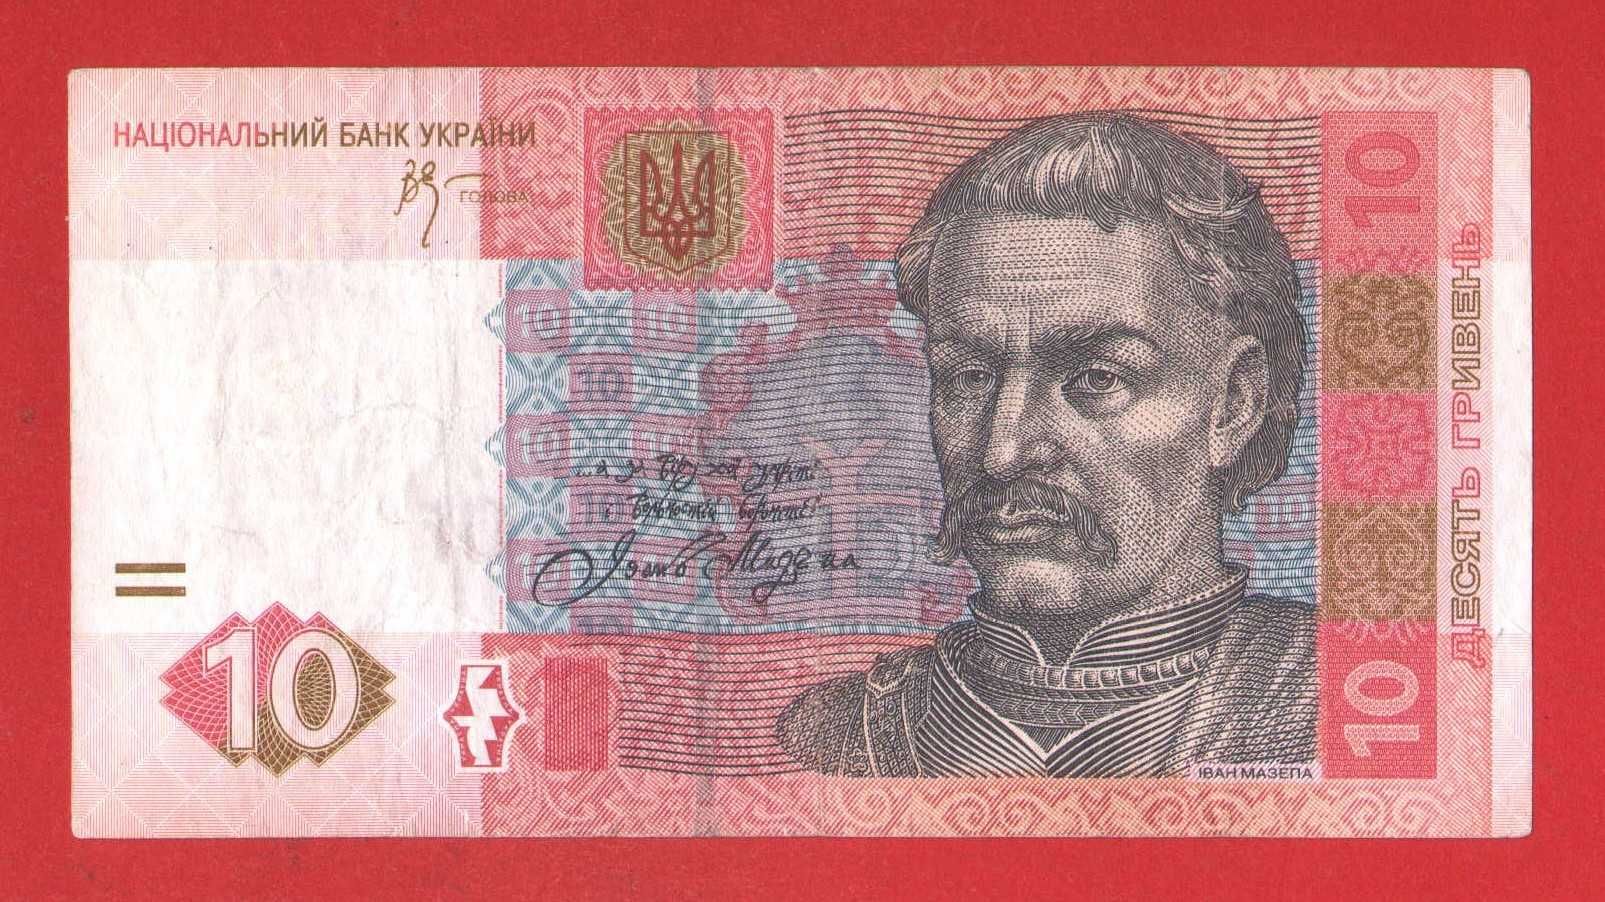 10 грн гривен 2006  Стельмах купюра/ банкнота